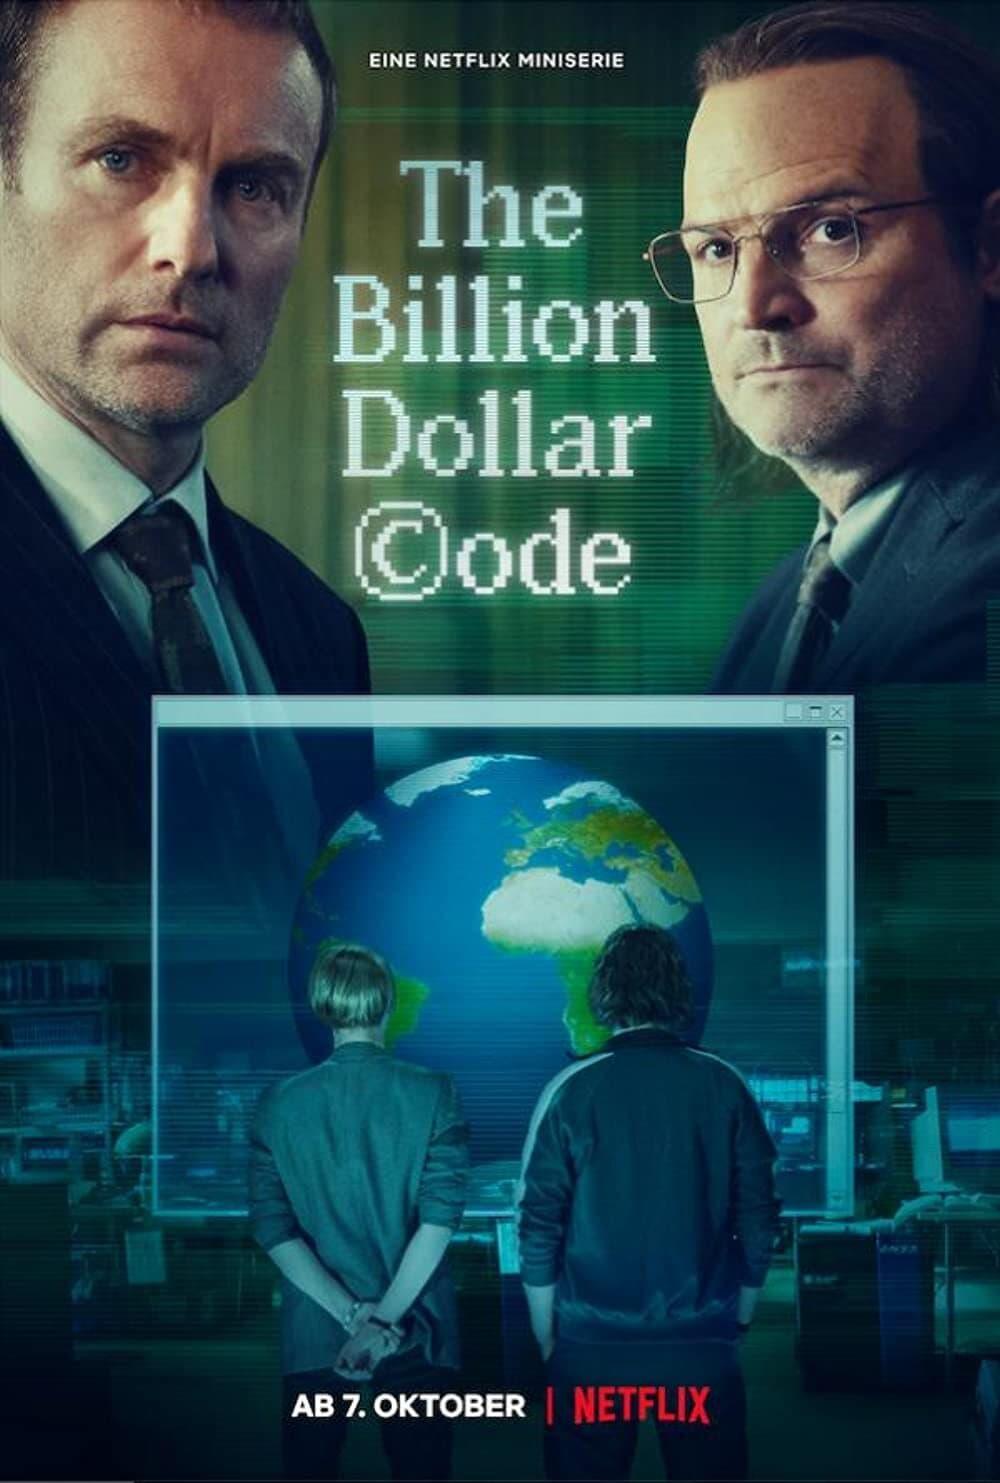 TV ratings for The Billion Dollar Code in Australia. Netflix TV series